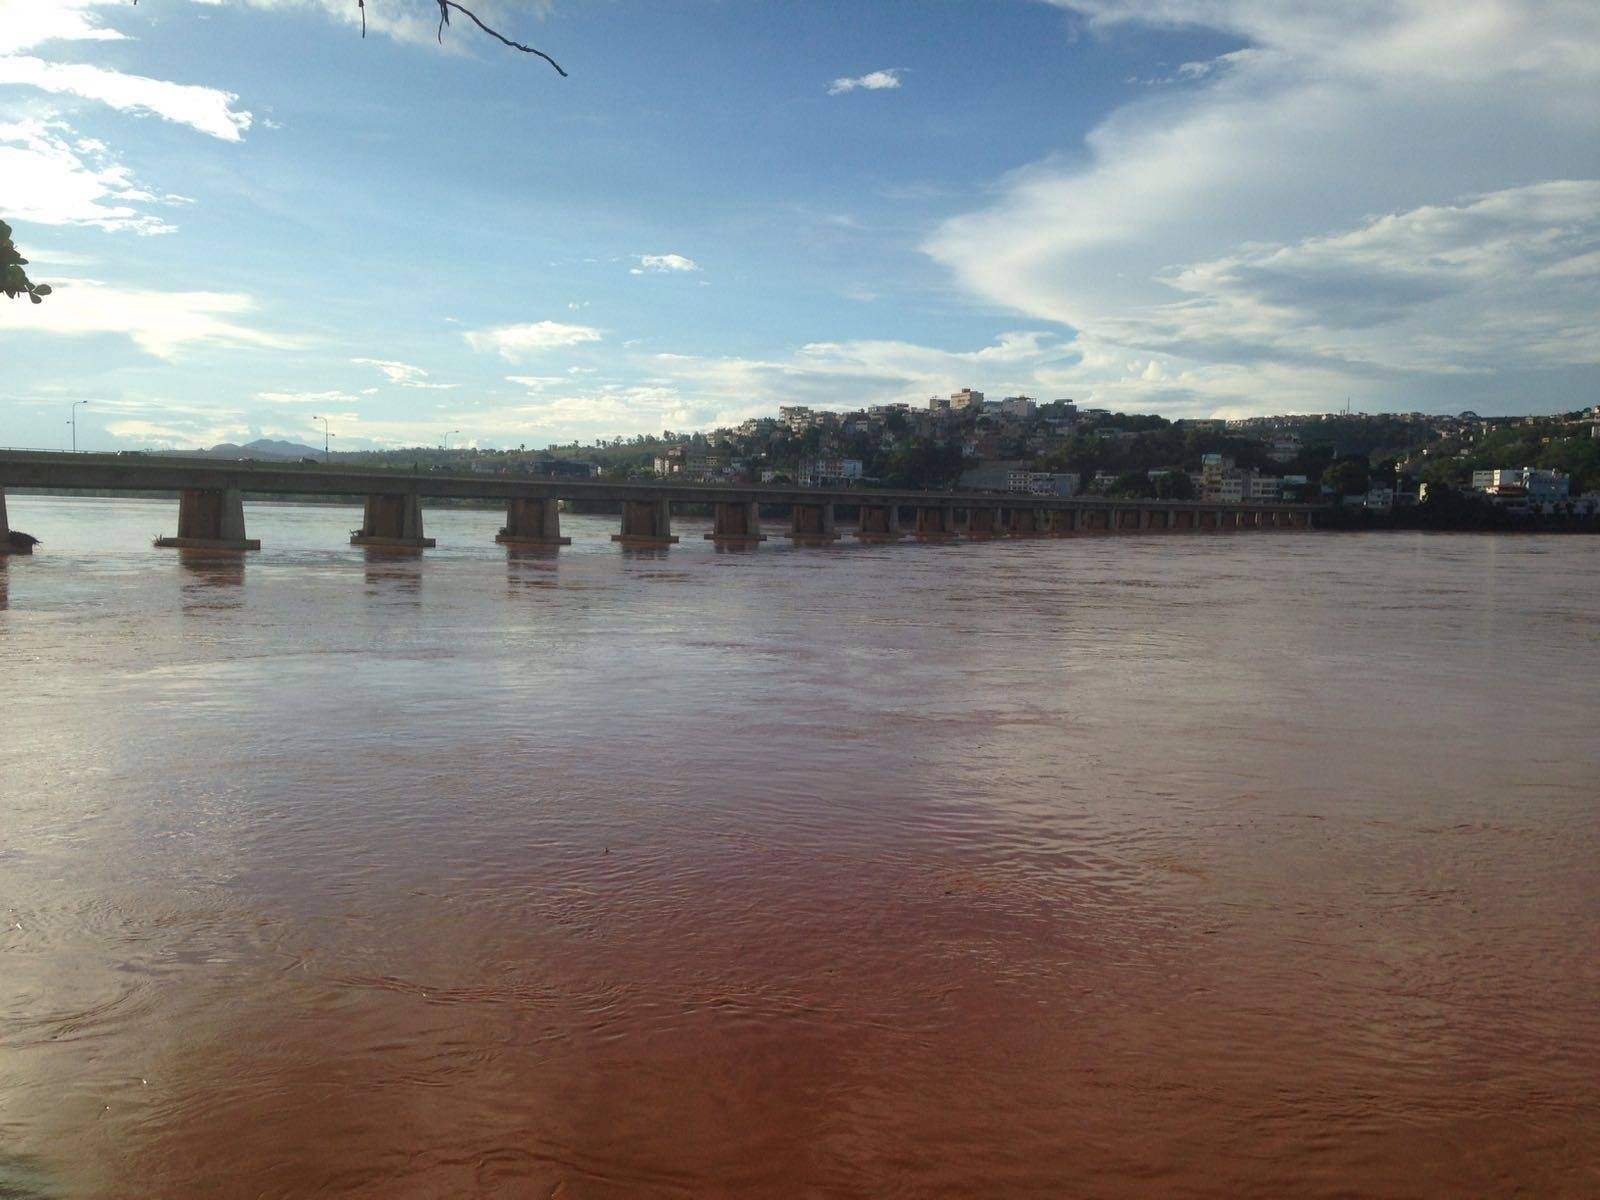 Serviços prometem contribuir para a melhoria da qualidade da água do Rio Doce, beneficiando 353 mil pessoas